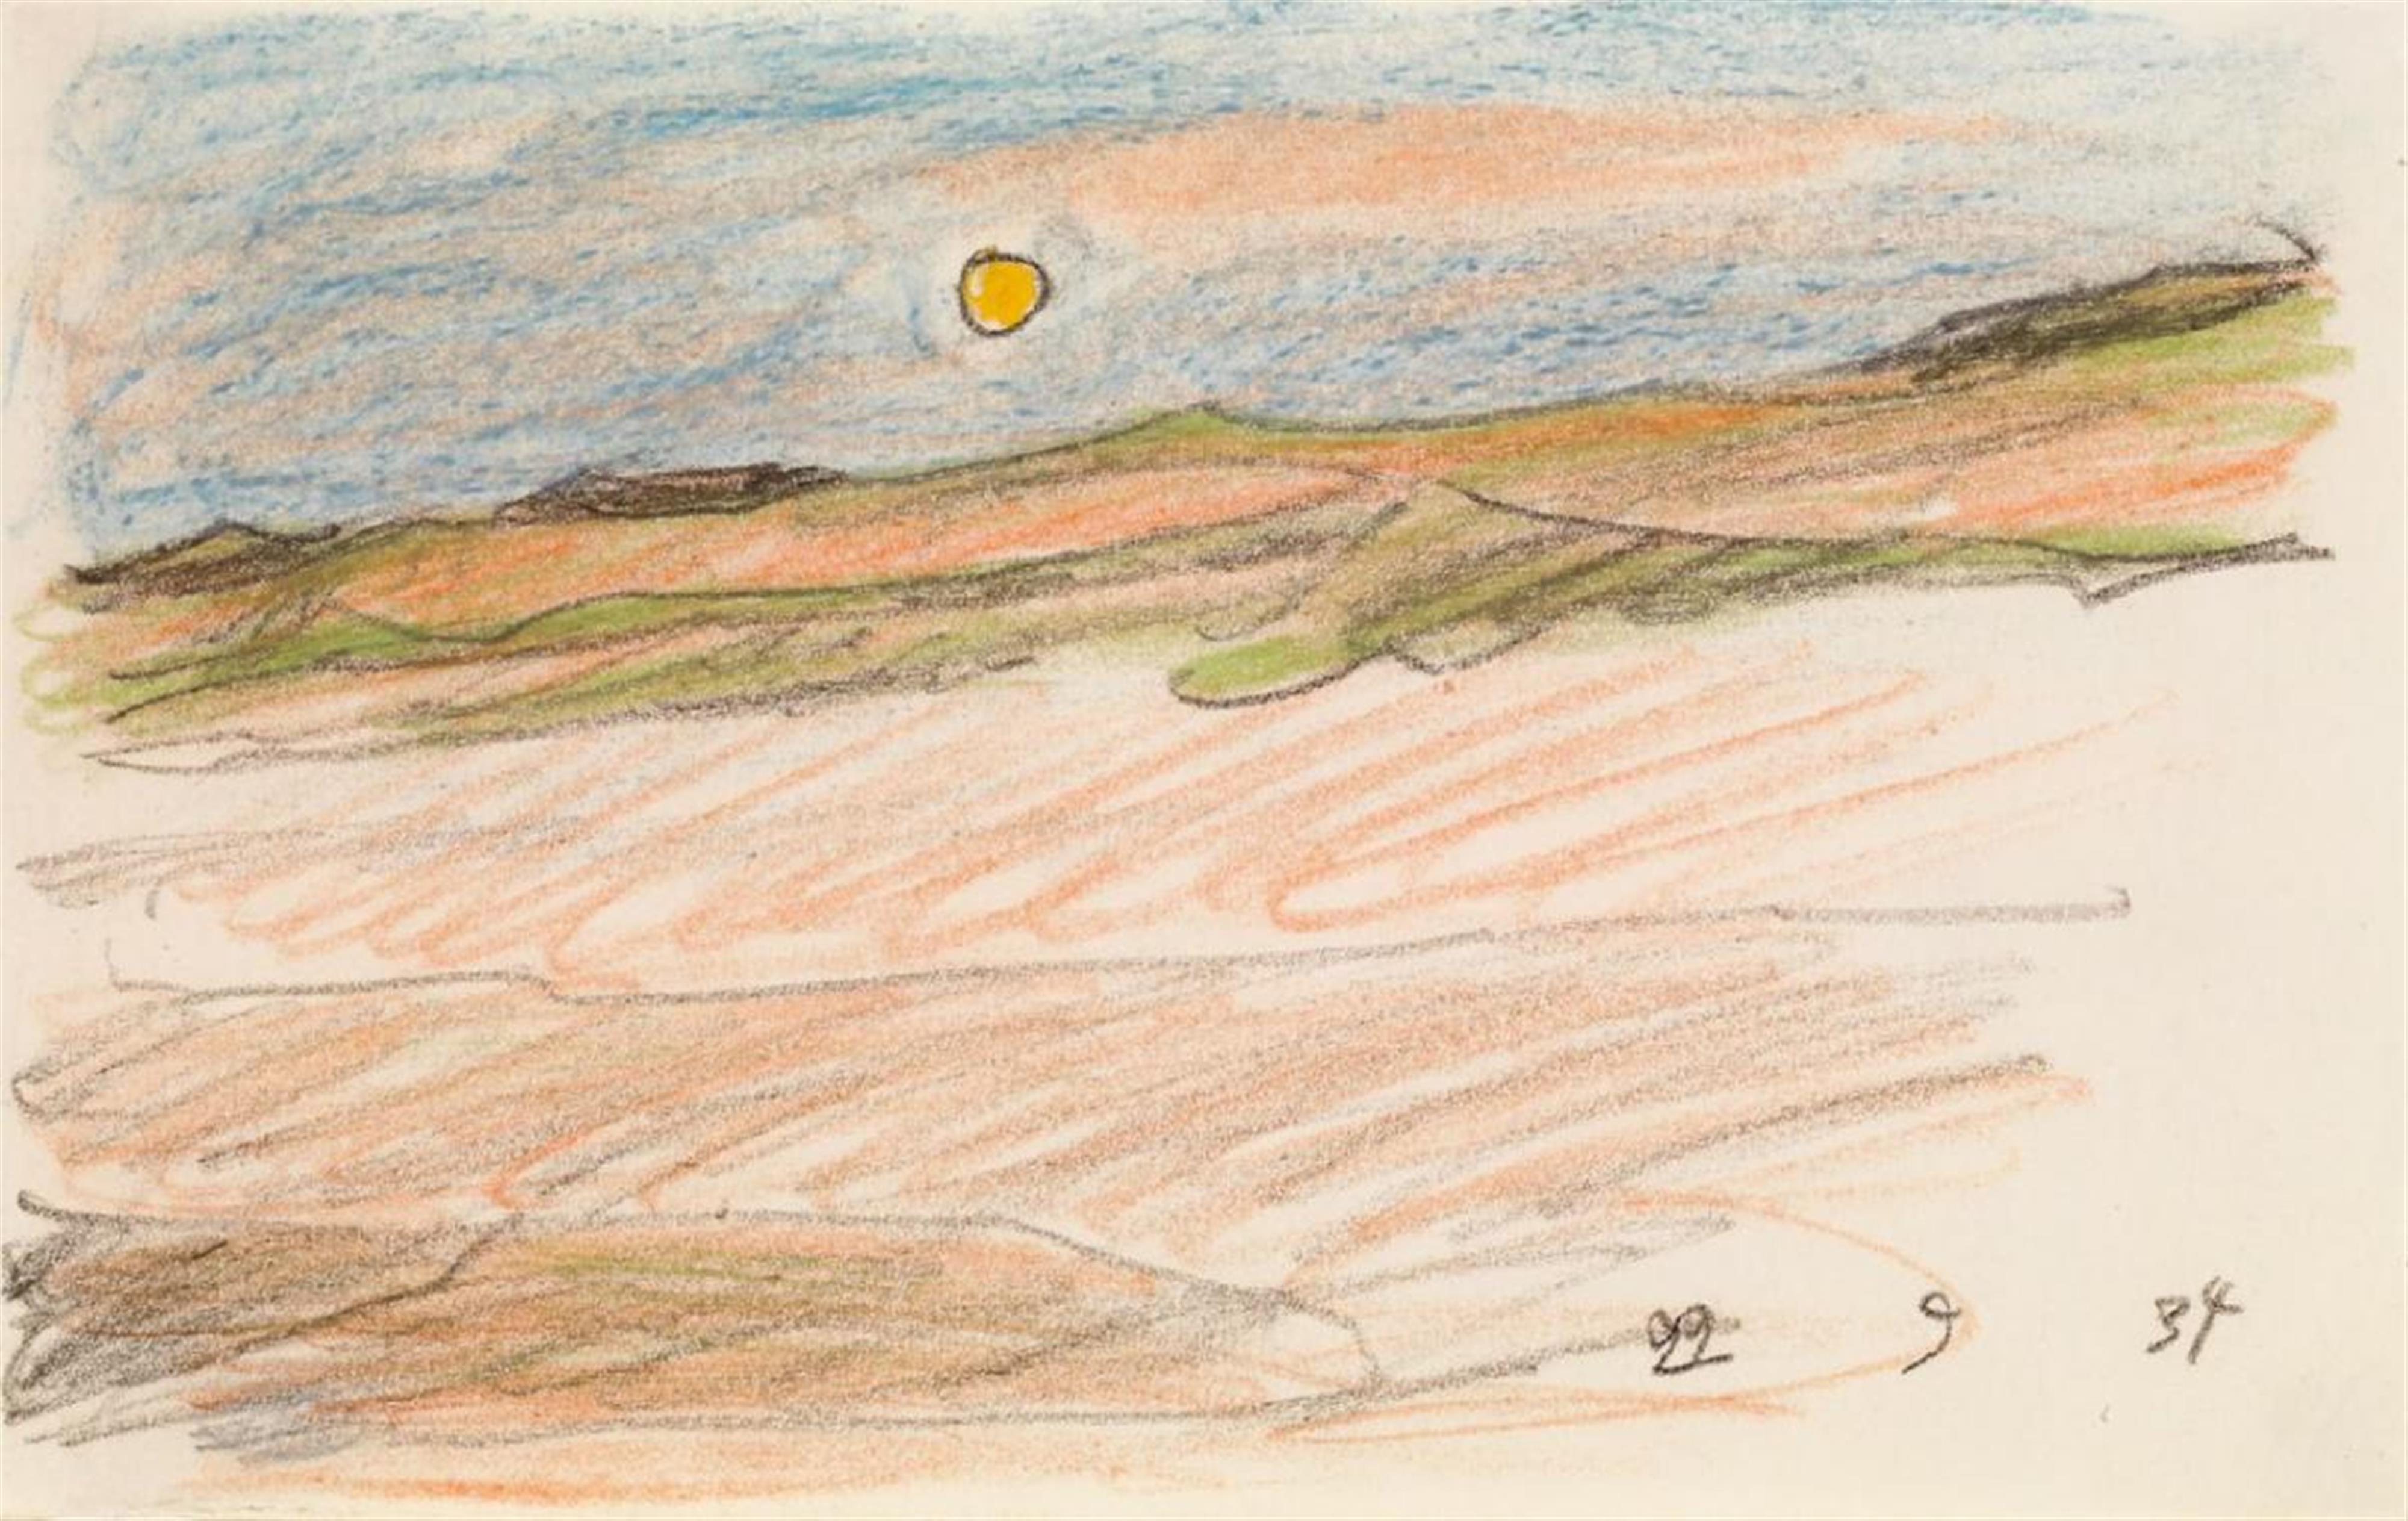 Lyonel Feininger - Golden Sun over Dunes (Baltische Küste bei Deep) - image-1